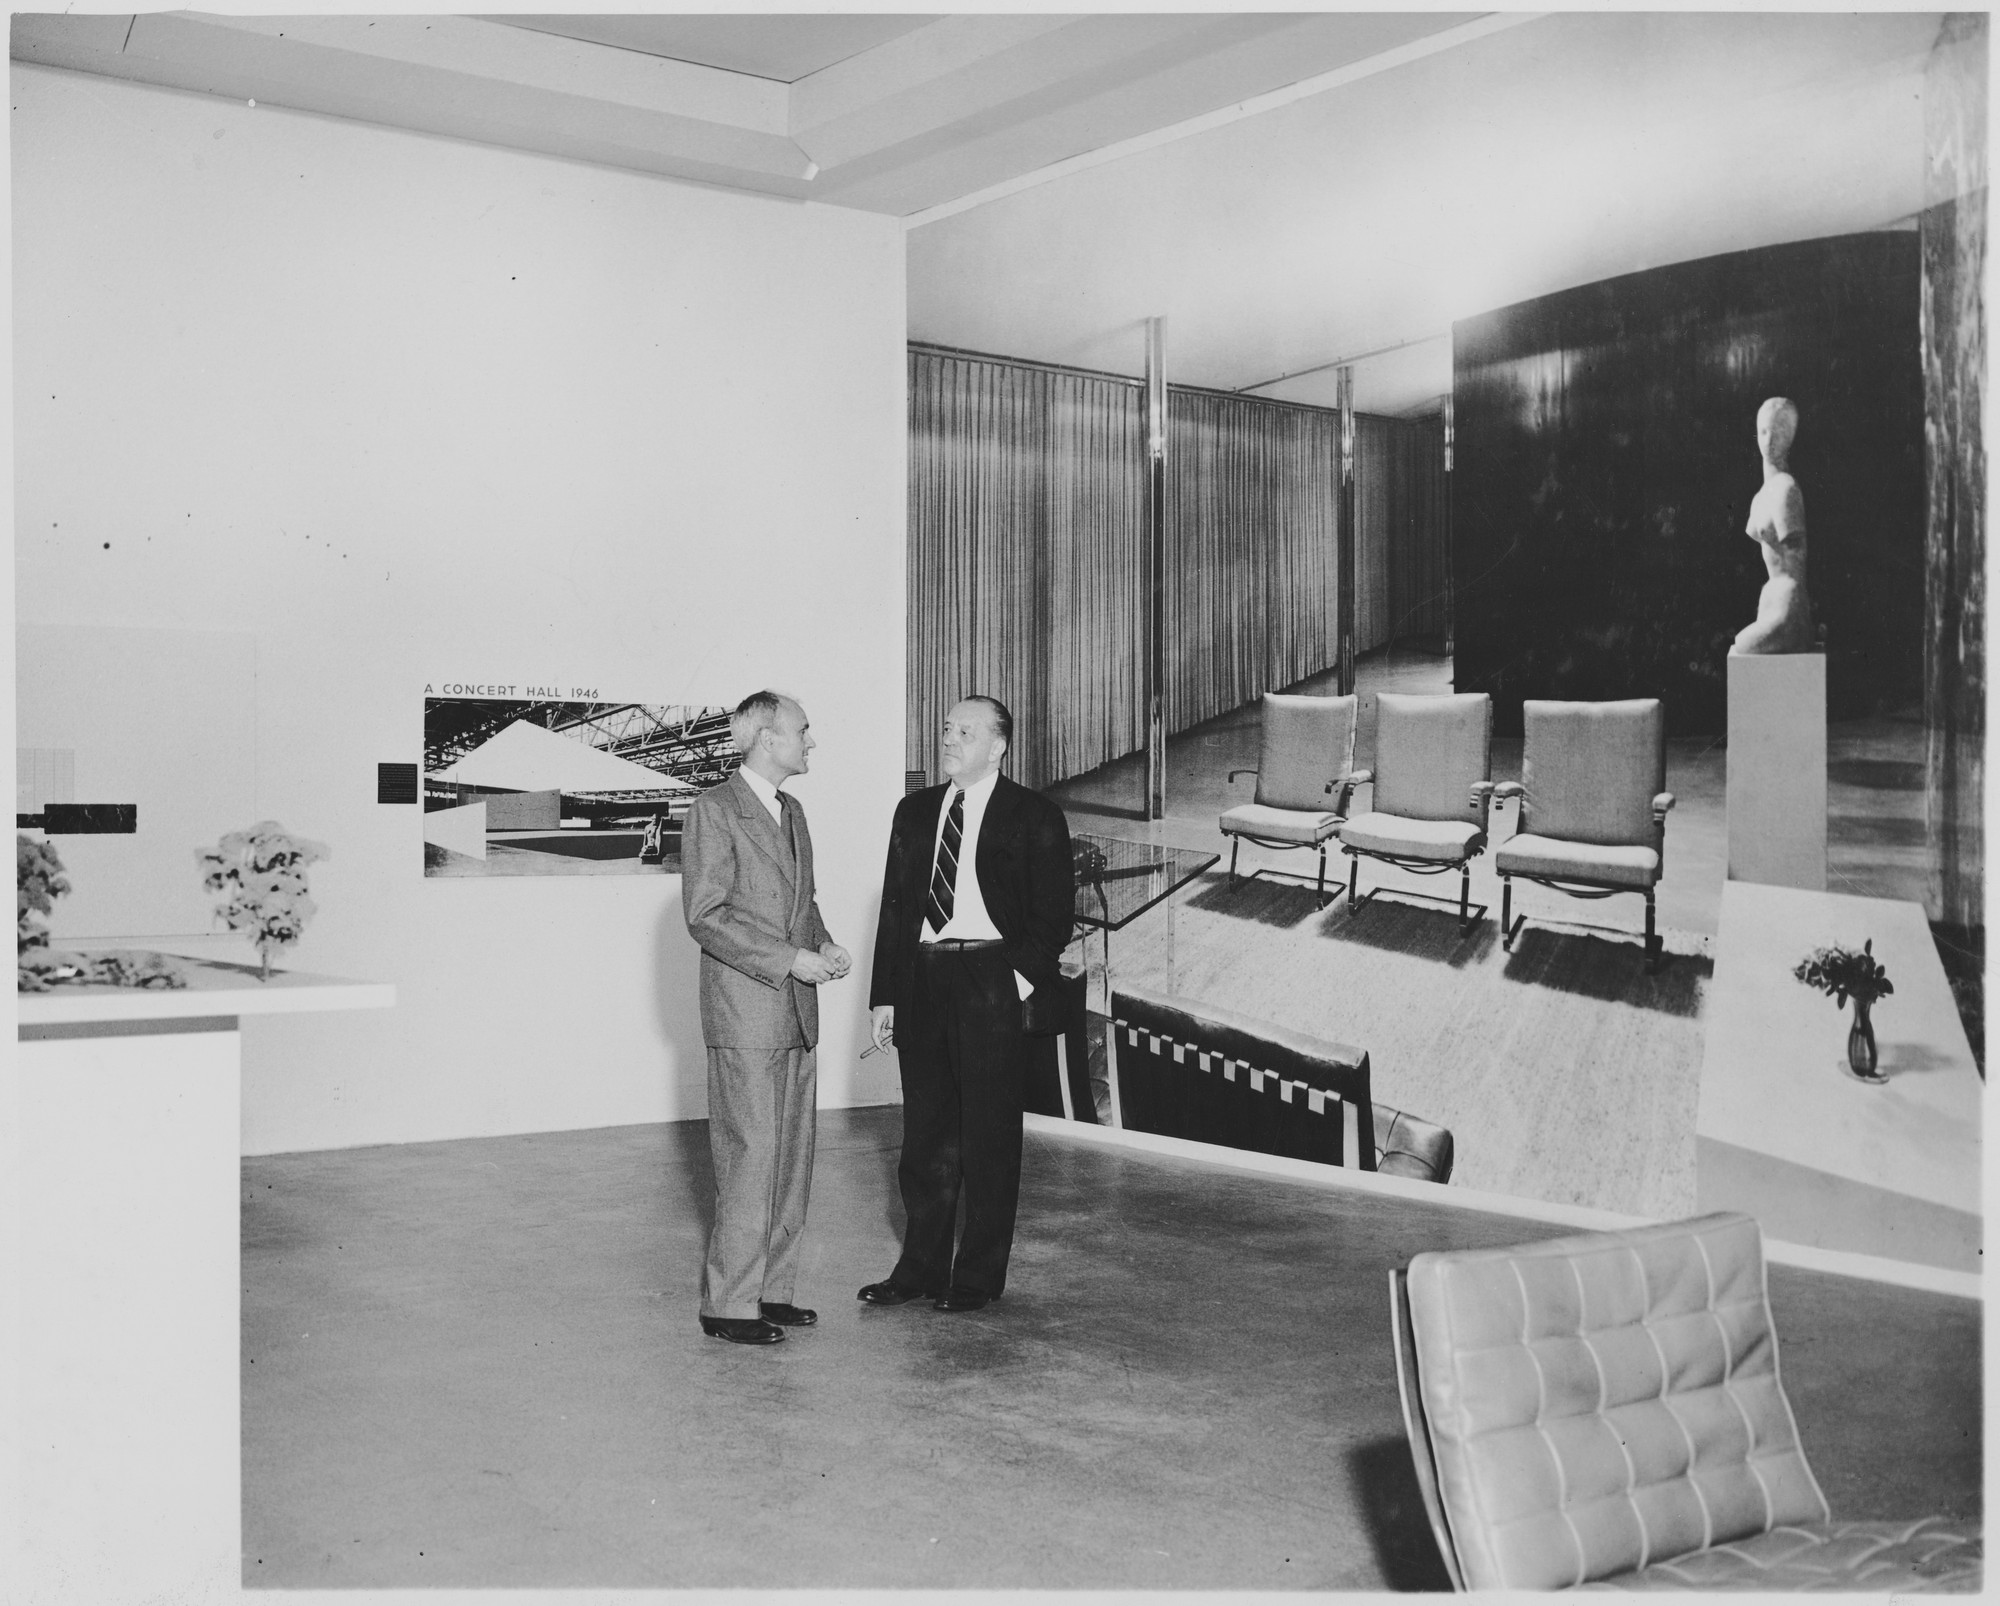 Mies van and Phillip Johnson," at the exhibition, "Mies van der Rohe" | MoMA